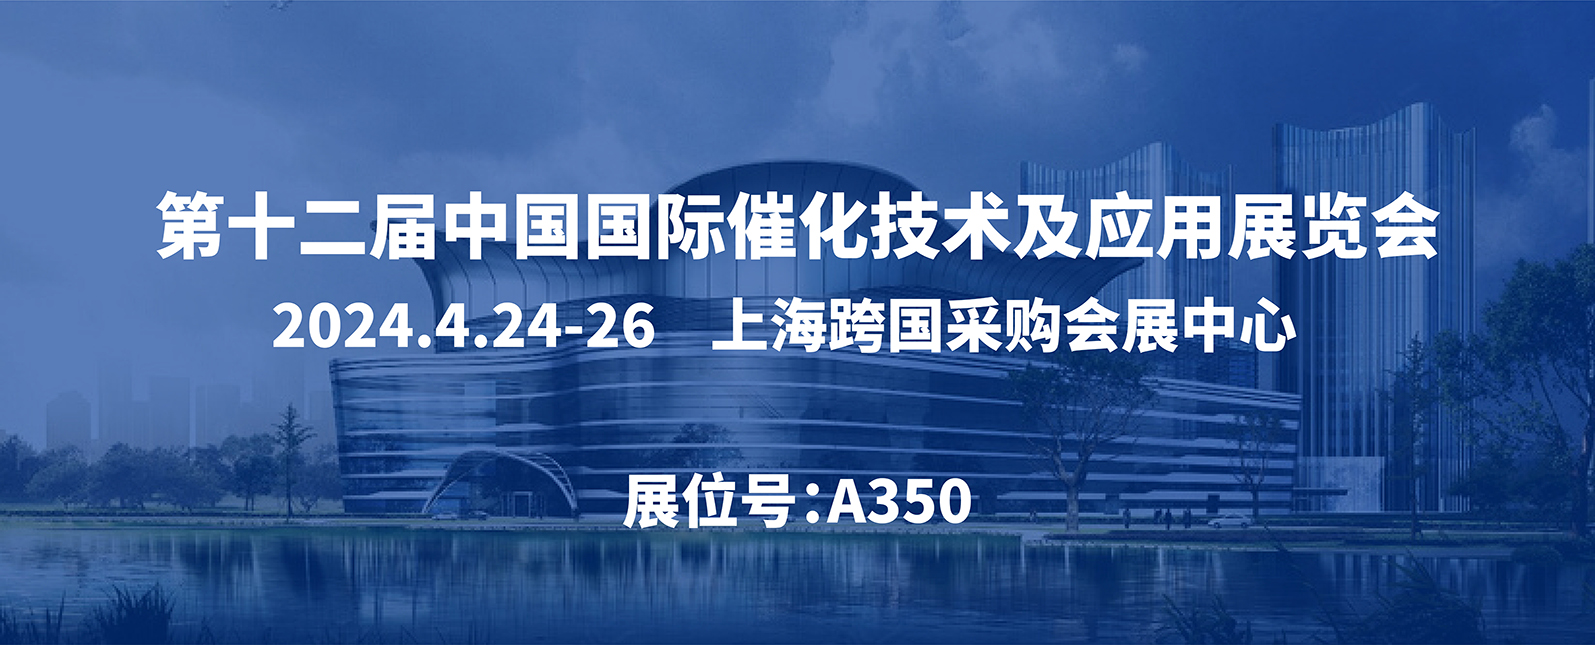 展会邀请丨第十二届中国国际催化技术及应用展览会 